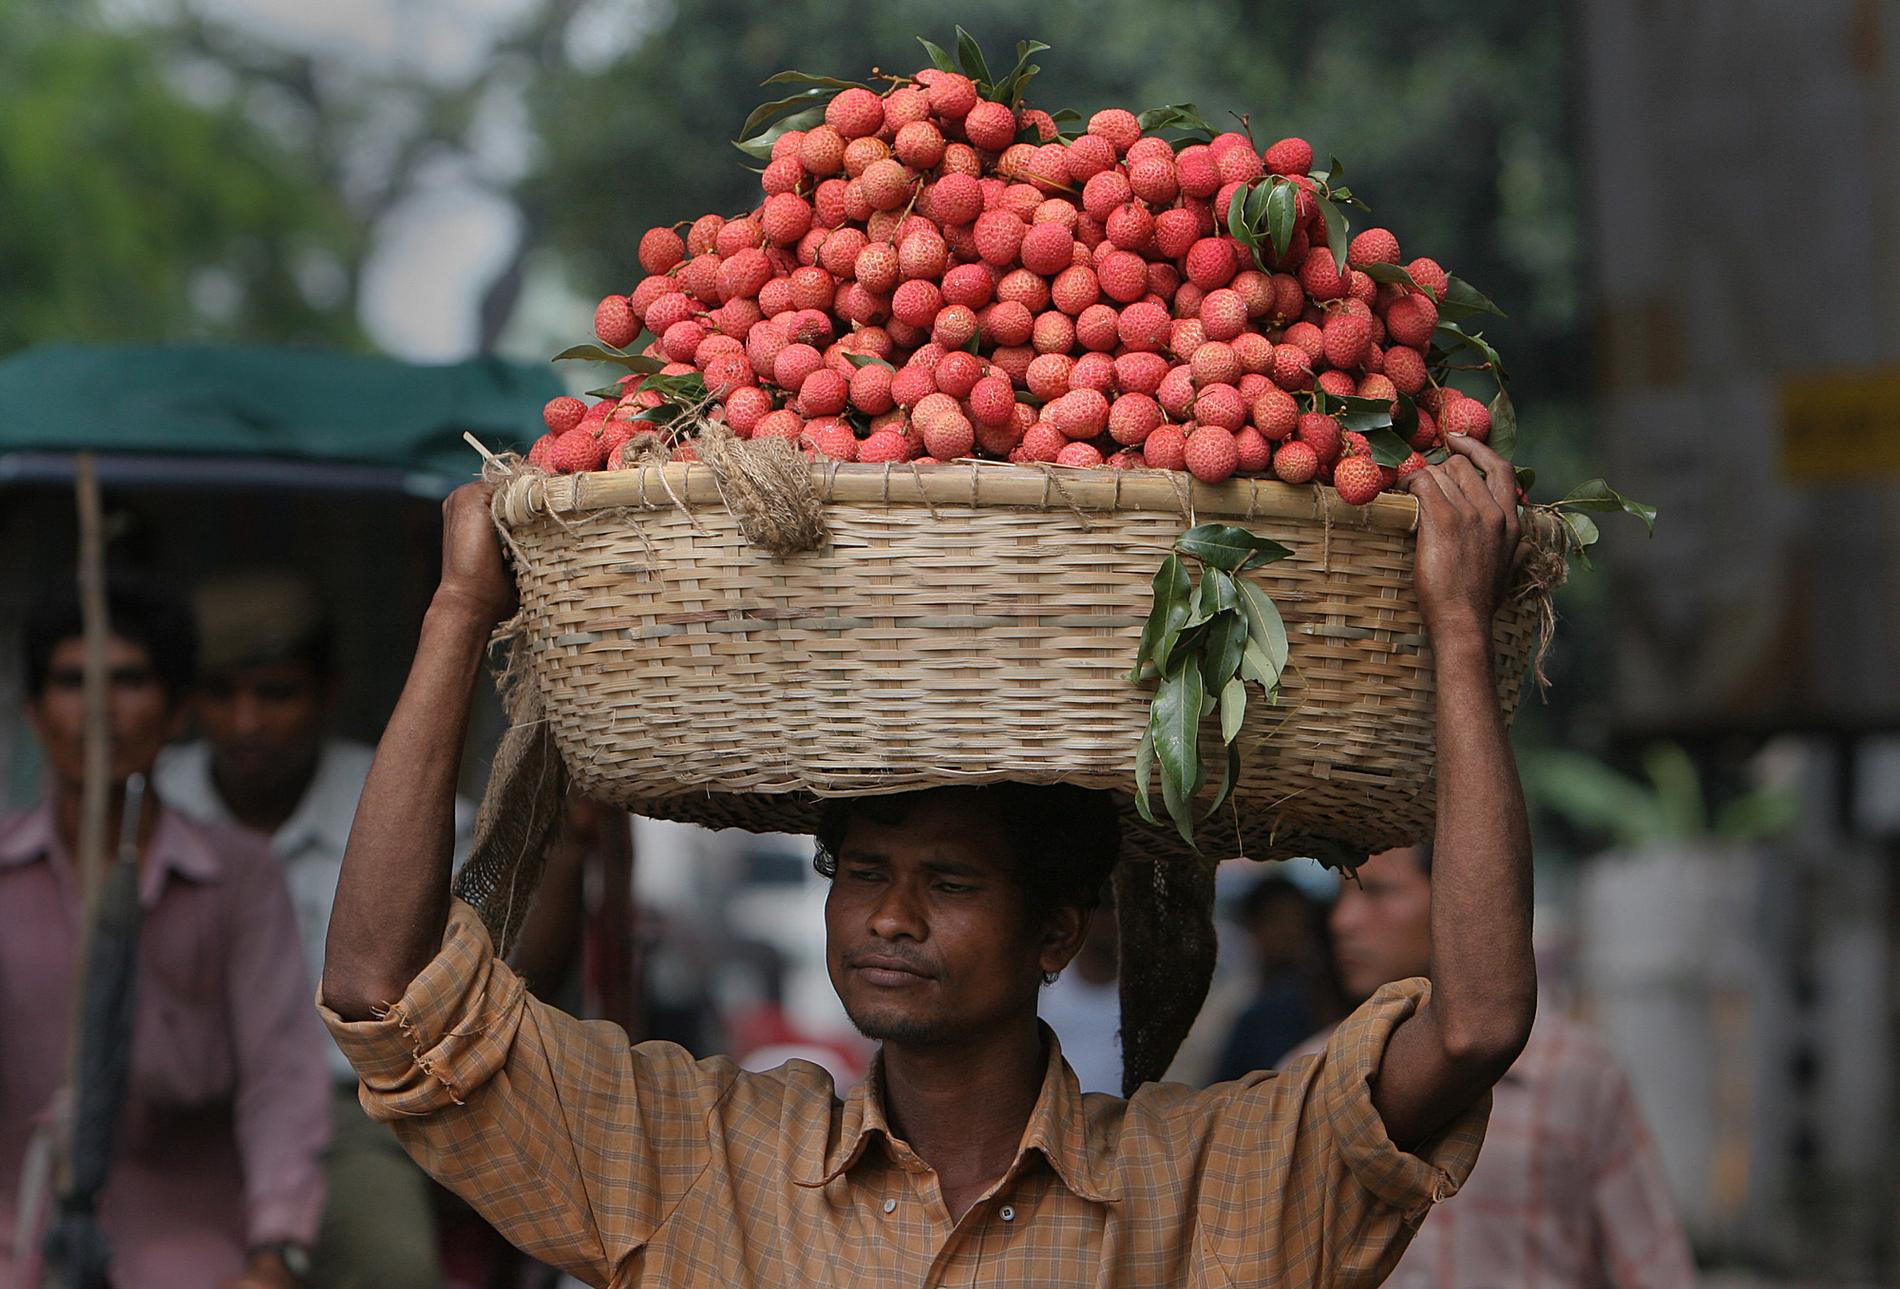 En försäljare bär en korg med litchifrukt i Indien. Arkivbild.